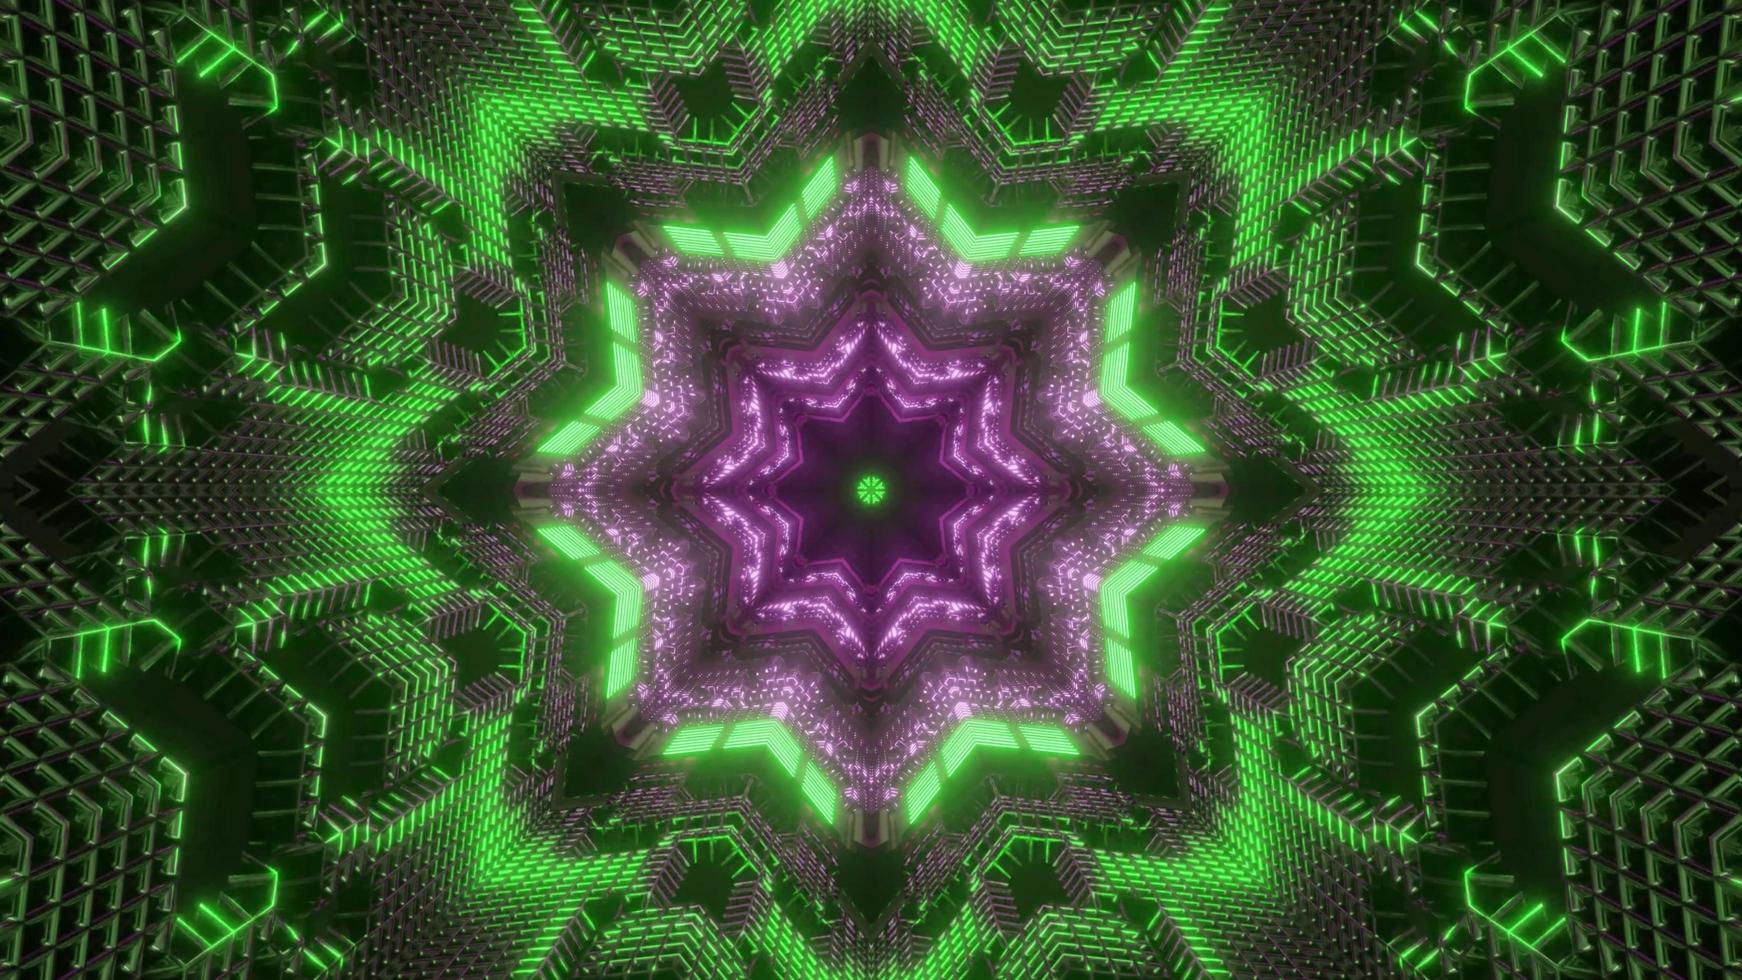 Ilustración 3d de caleidoscopio de formas y luces verdes, púrpuras y blancas para fondo o papel tapiz foto